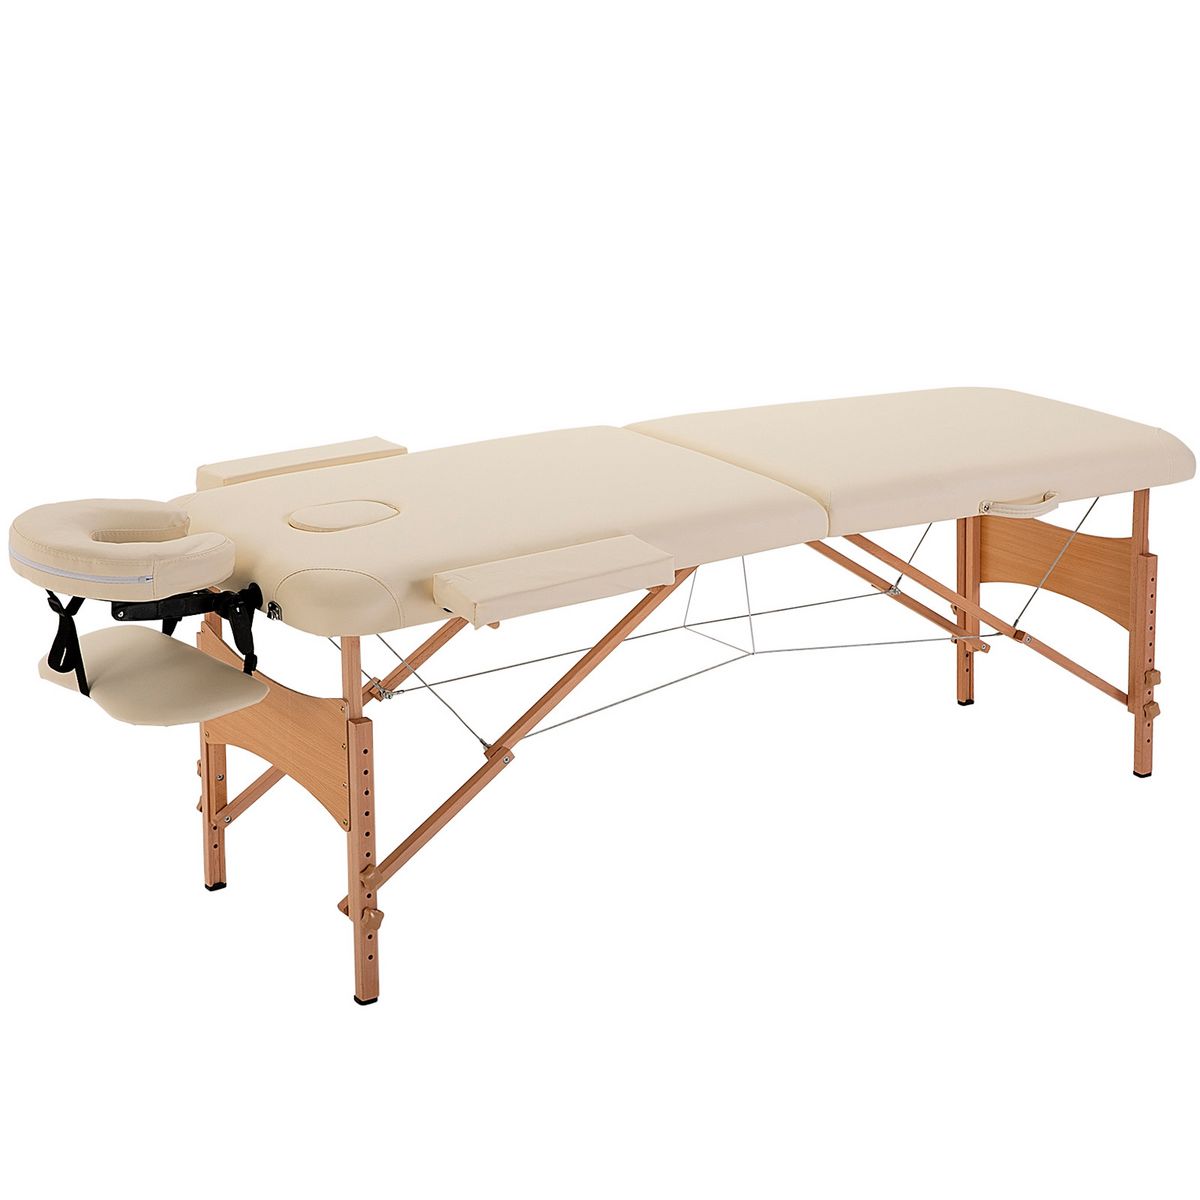 HOMCOM Table de massage pliante lit table de beauté 2 zones portable sac de tranport inclus hauteur réglable dim. 182L x 60l x 61-87H cm bois massif revêtement synthétique crème